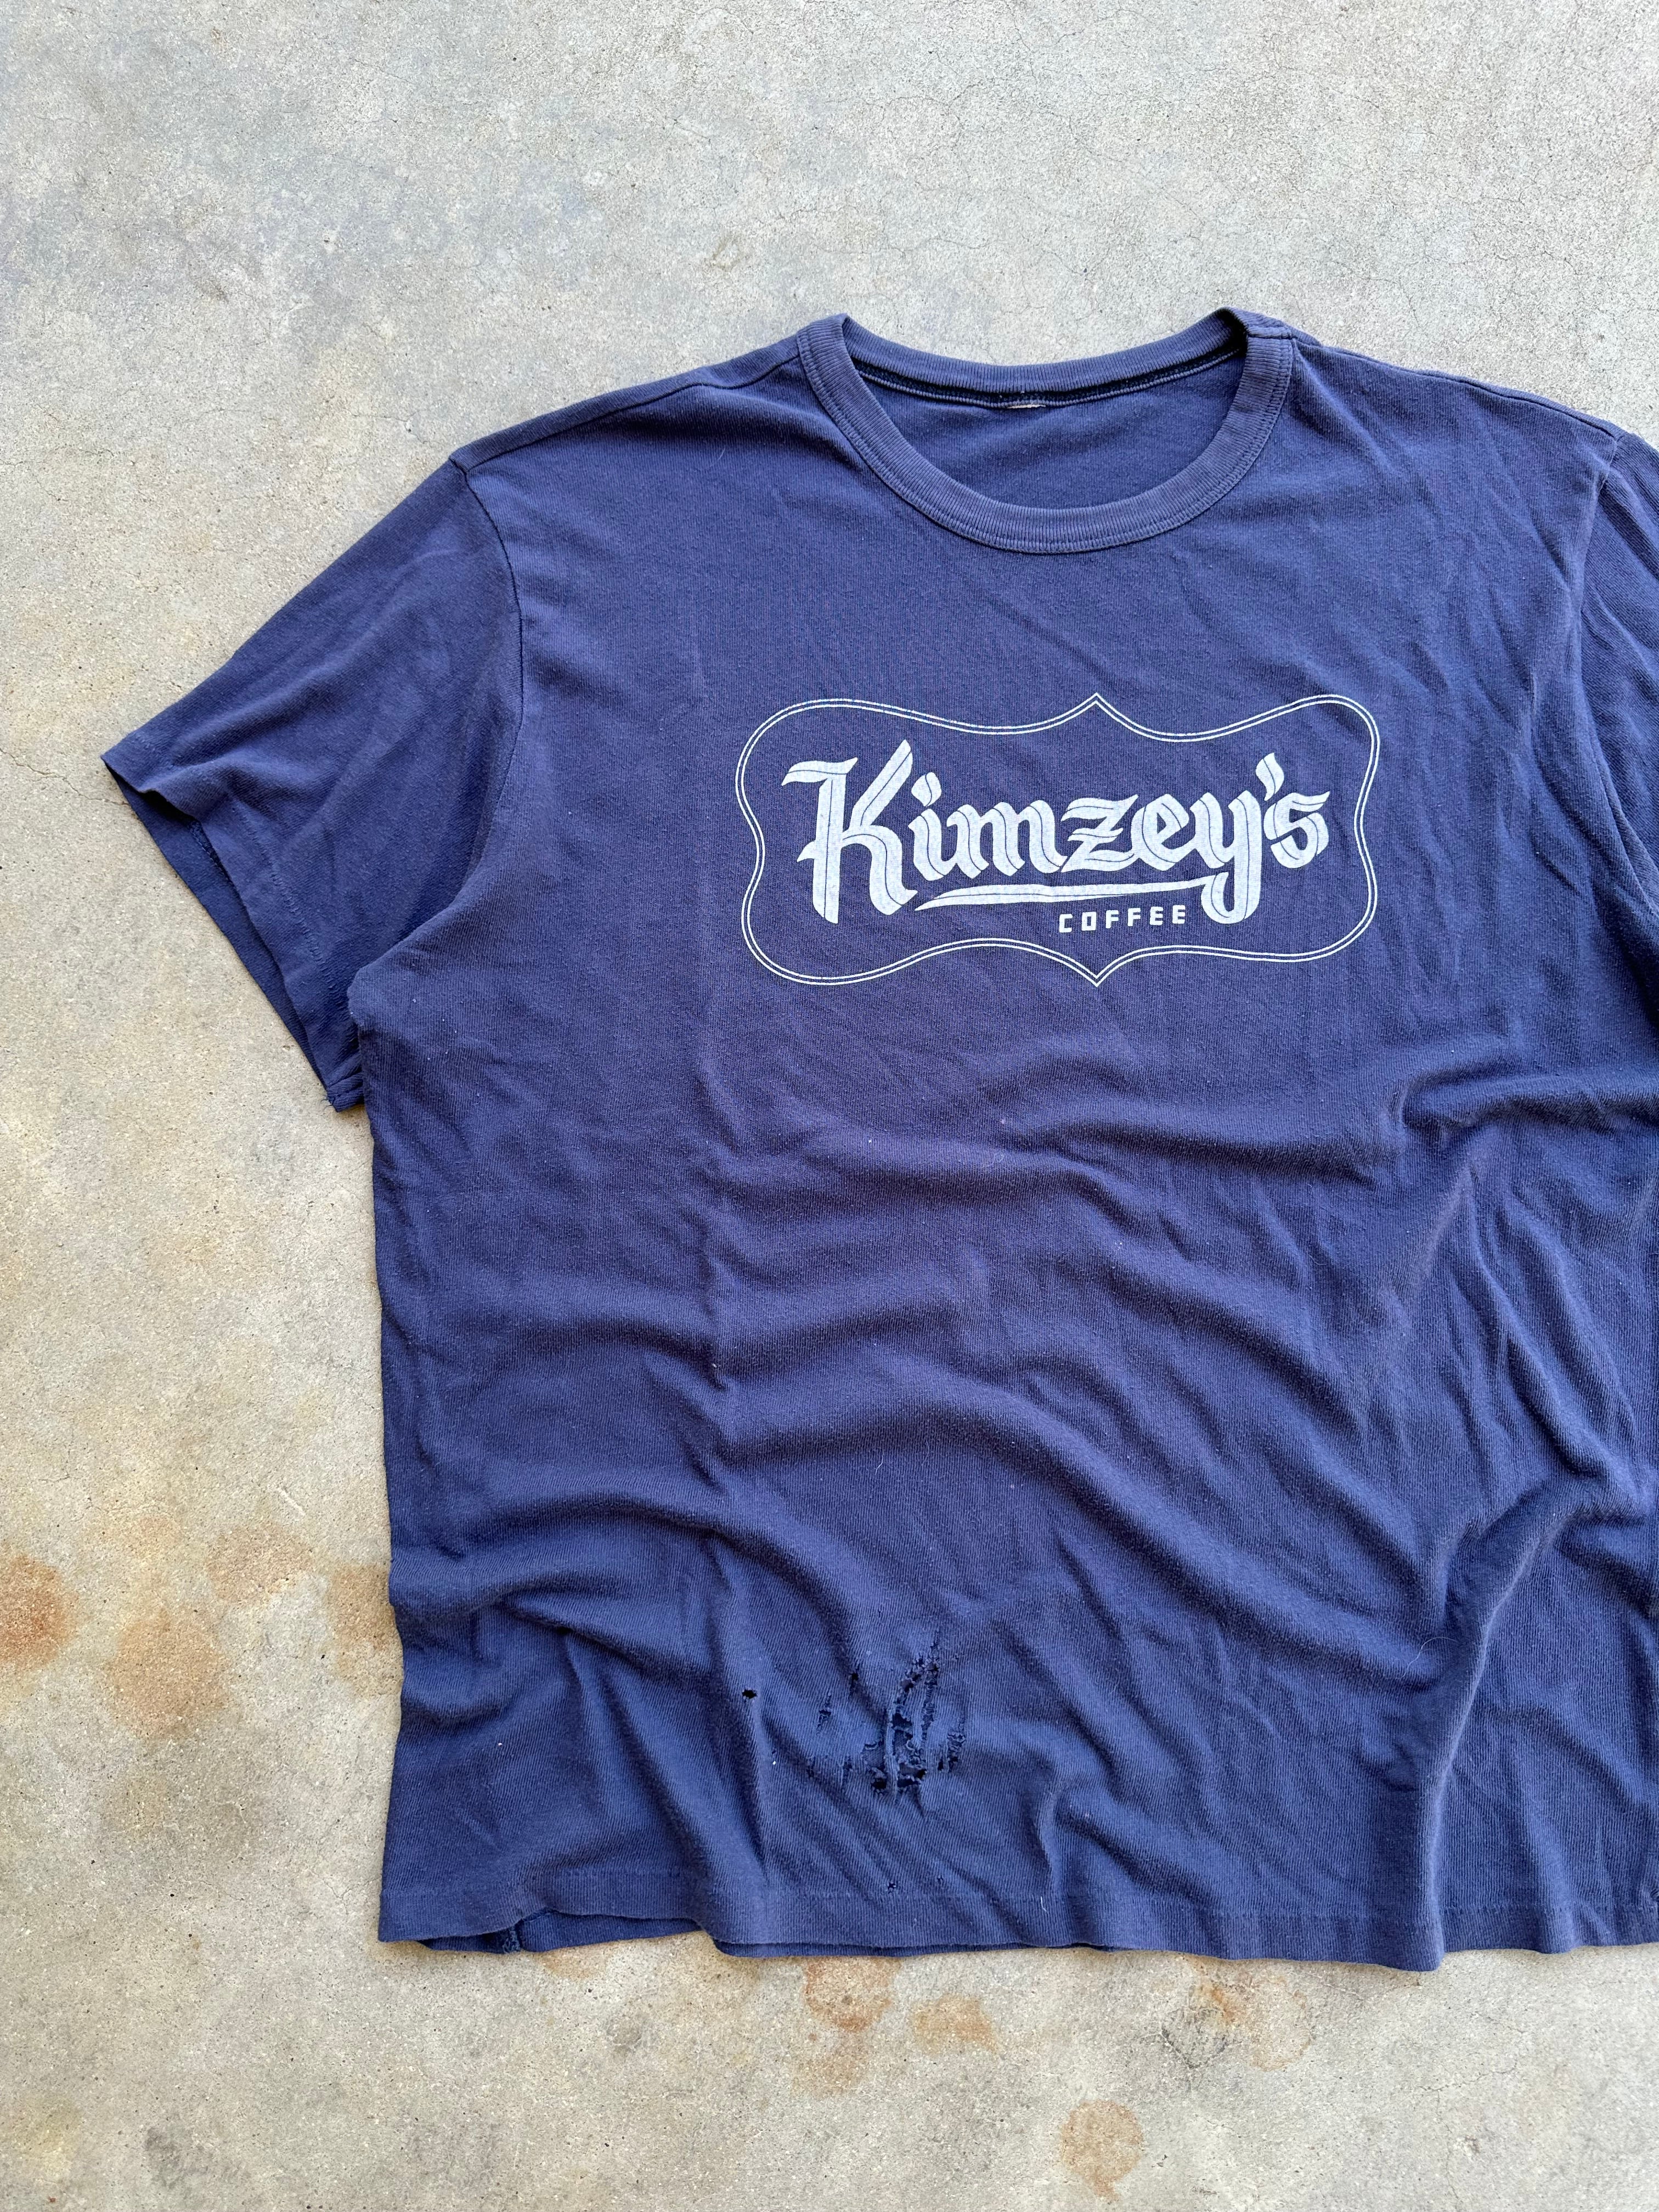 1980s Distressed Kimzey’s Coffee T-Shirt (L)